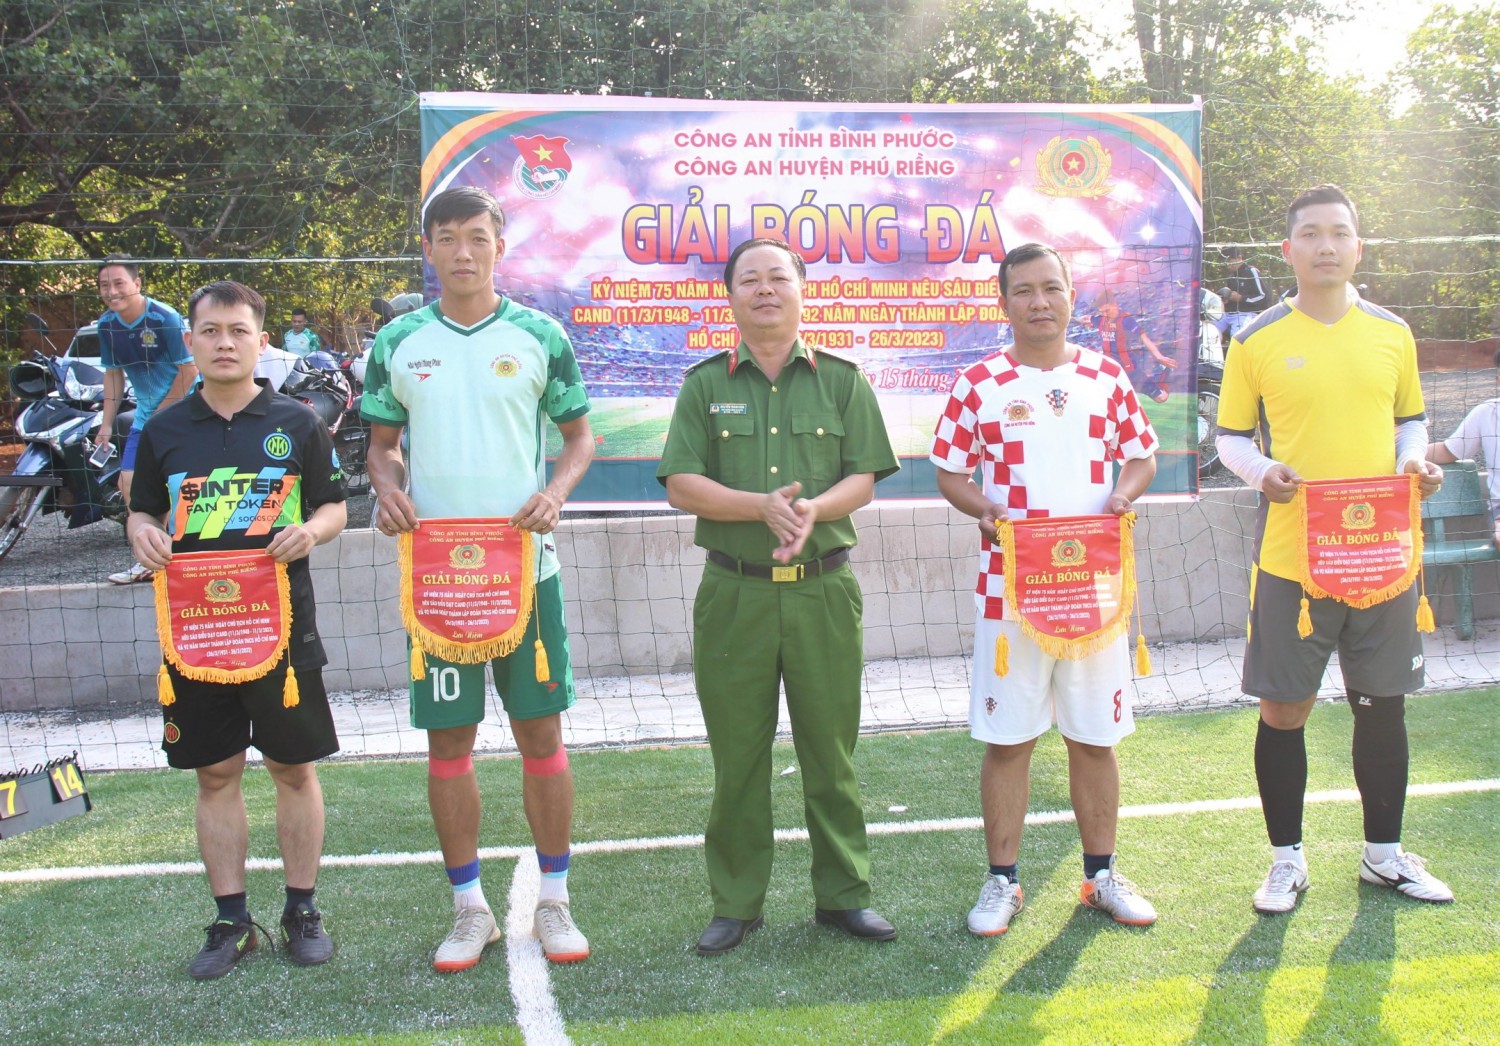 Đoàn Thanh niên Công an huyện Phú Riềng tổ chức Giải bóng đá giao lưu kỷ niệm các ngày lễ trong tháng 3.